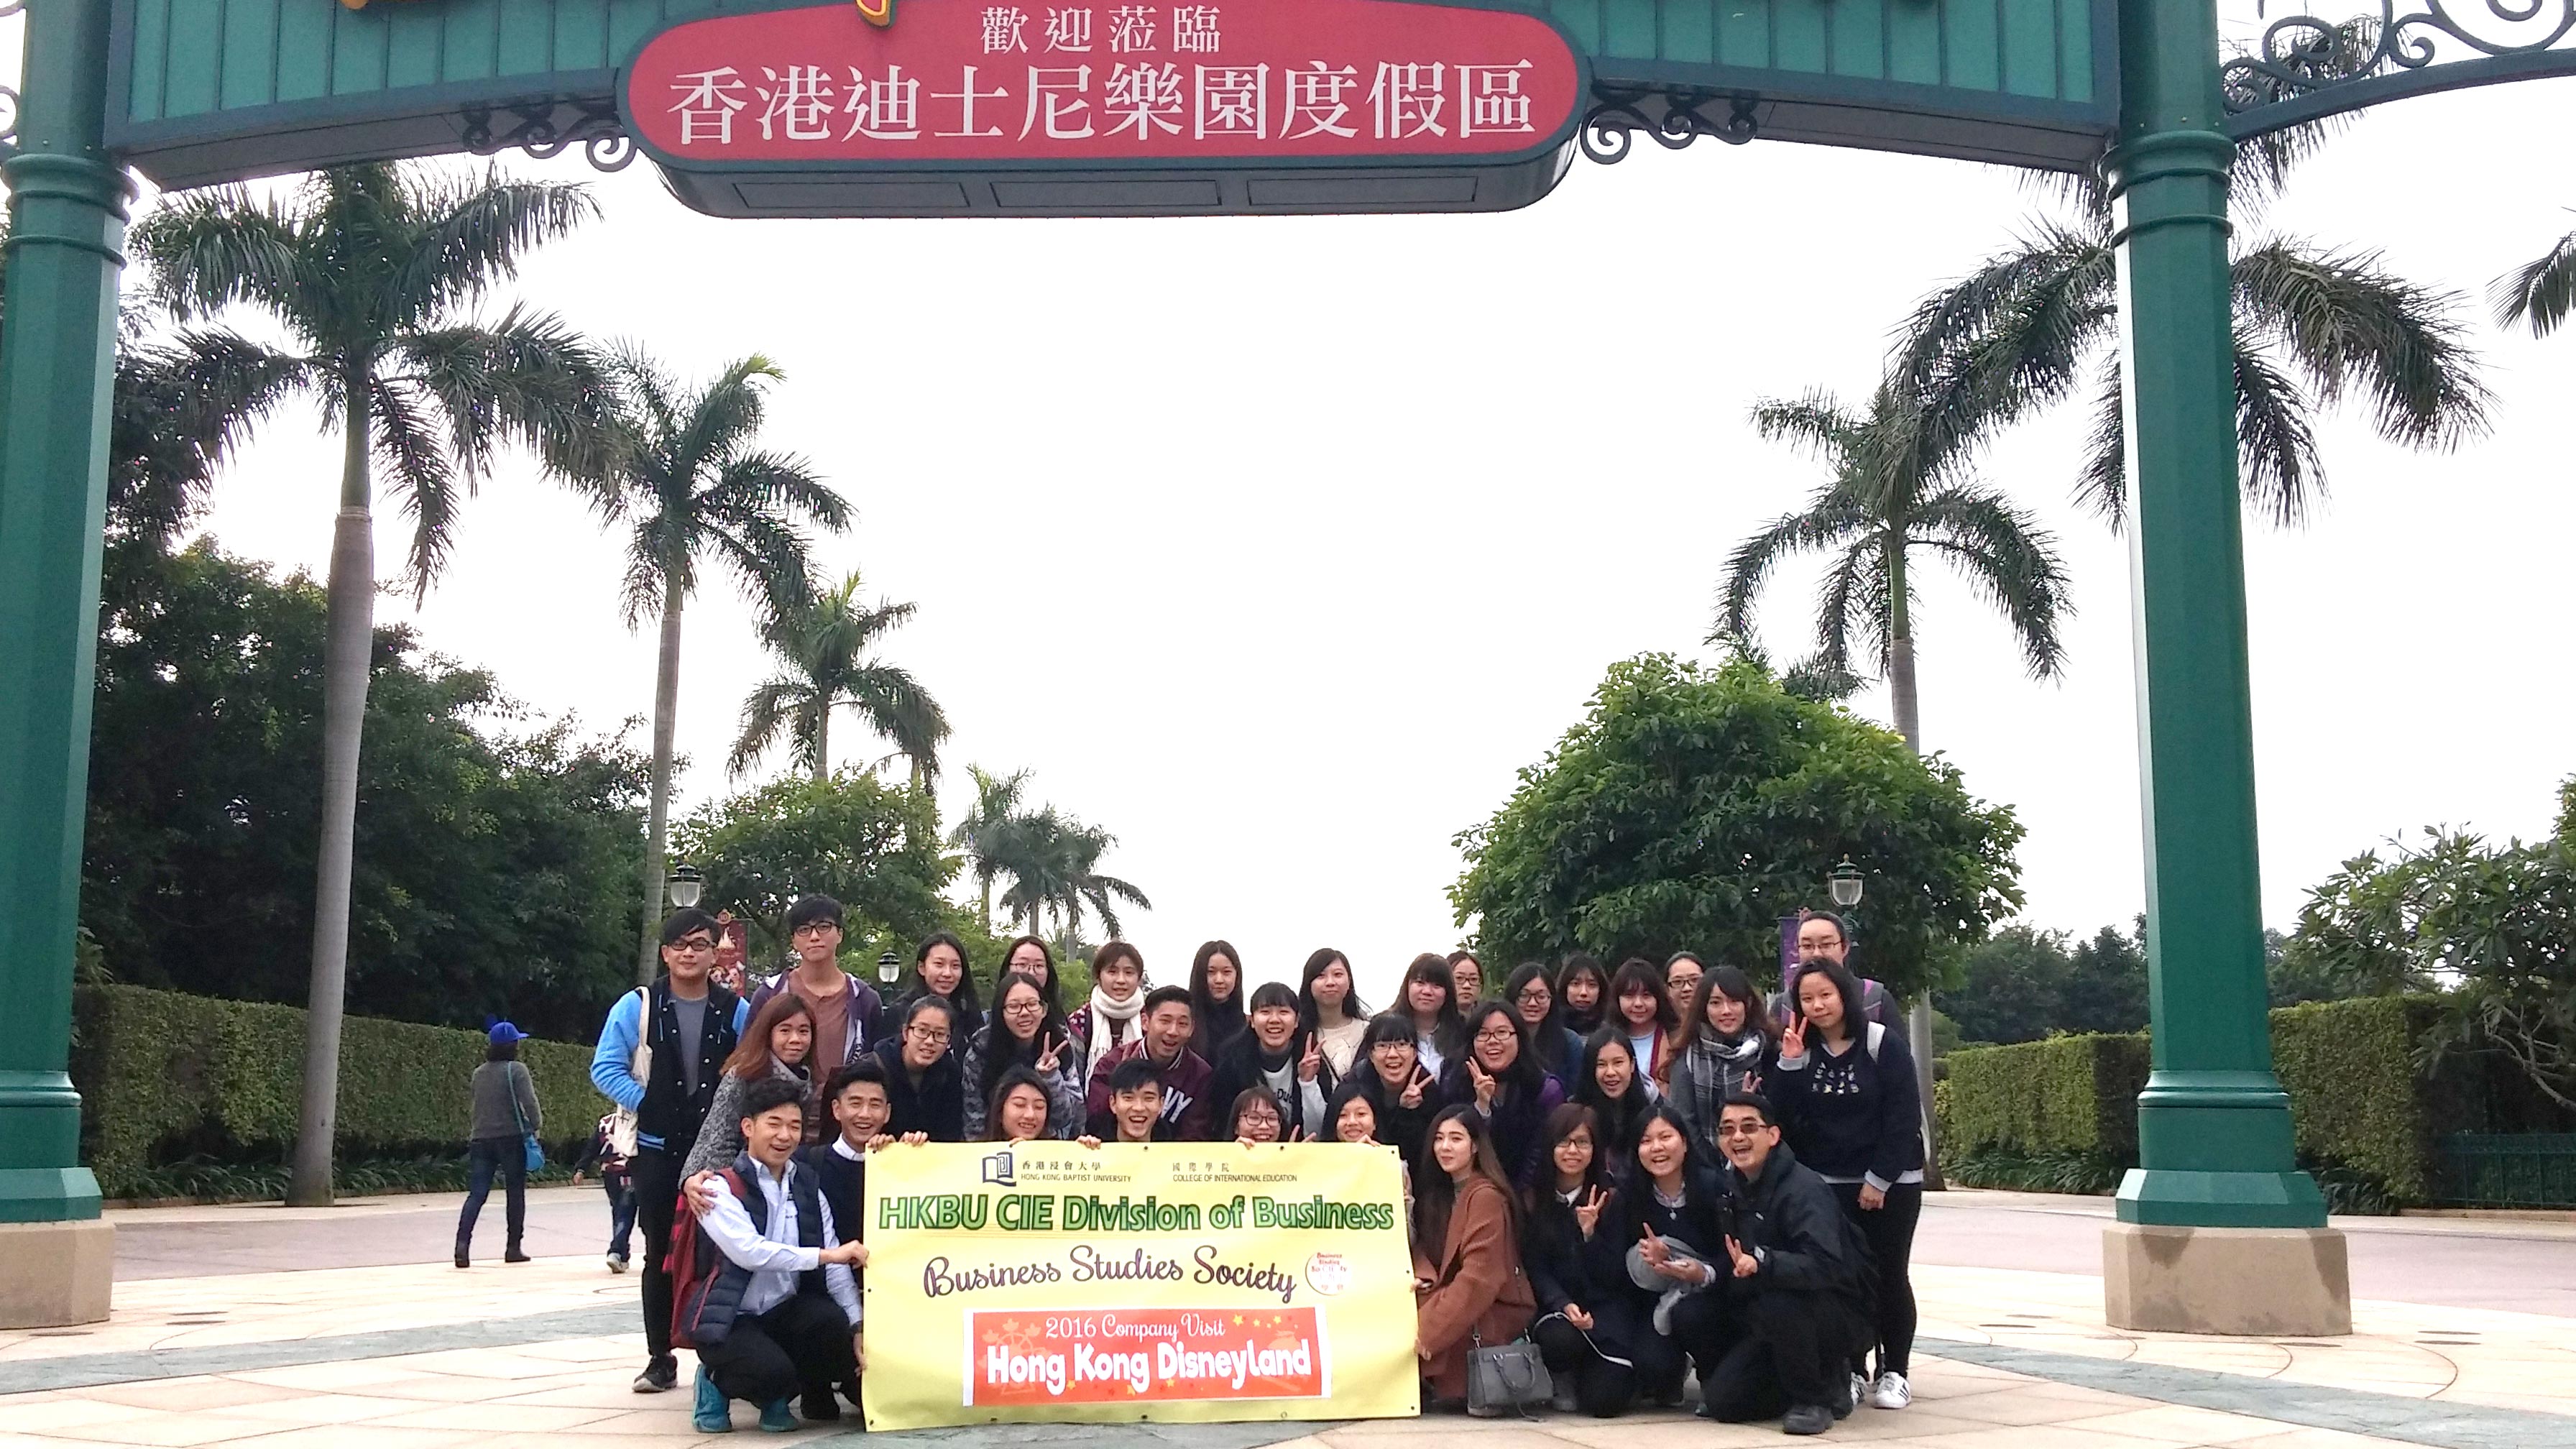 國際學院講師徐志強博士與商學會的同學參觀香港迪士尼樂園後台的預備工作。